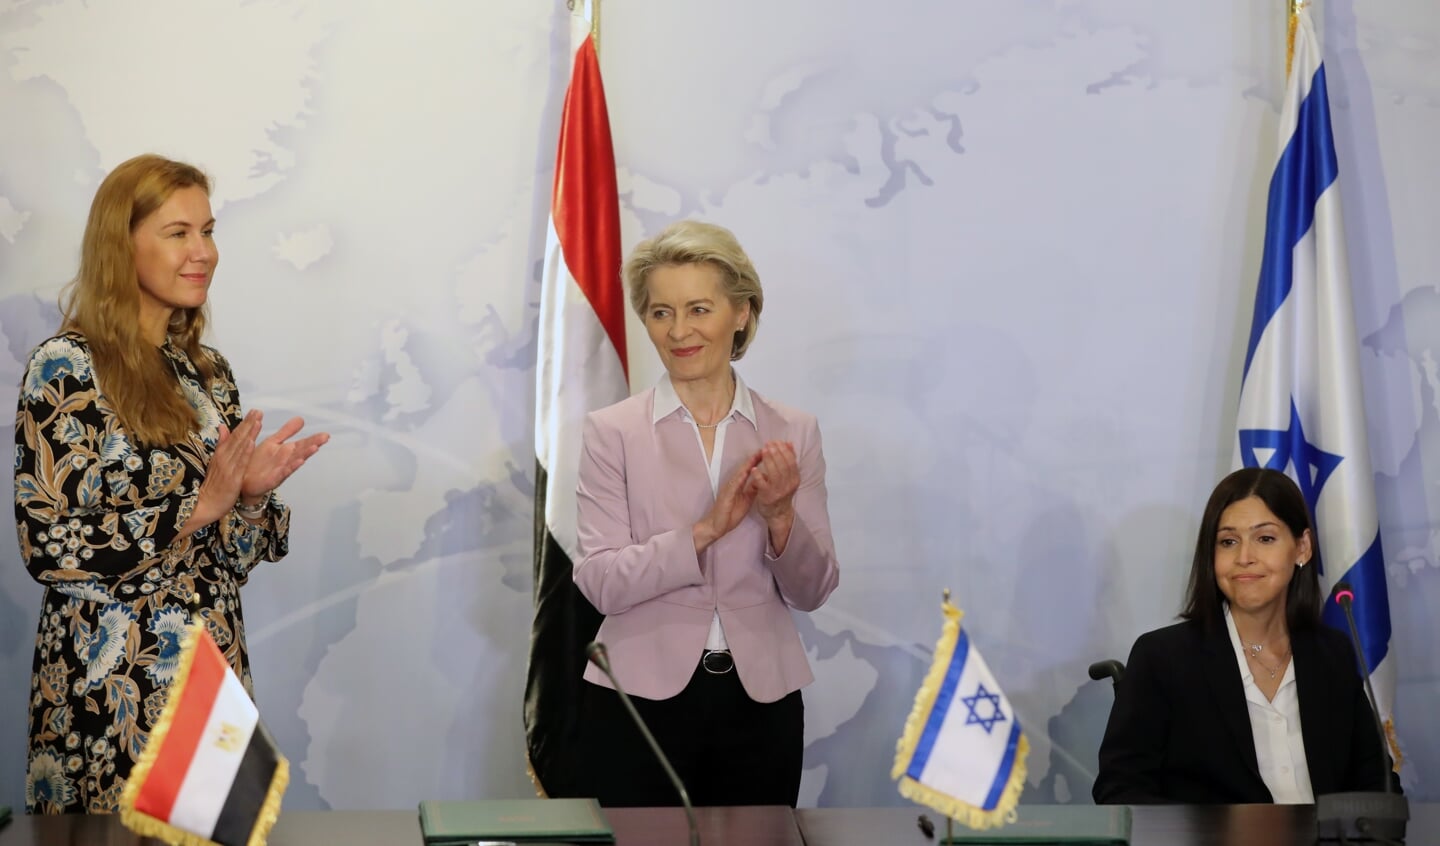 Egypte, de EU en Israël hebben op 15 juni een overeenkomst ondertekend over de export van aardgas van Israël naar Europa via Egypte.